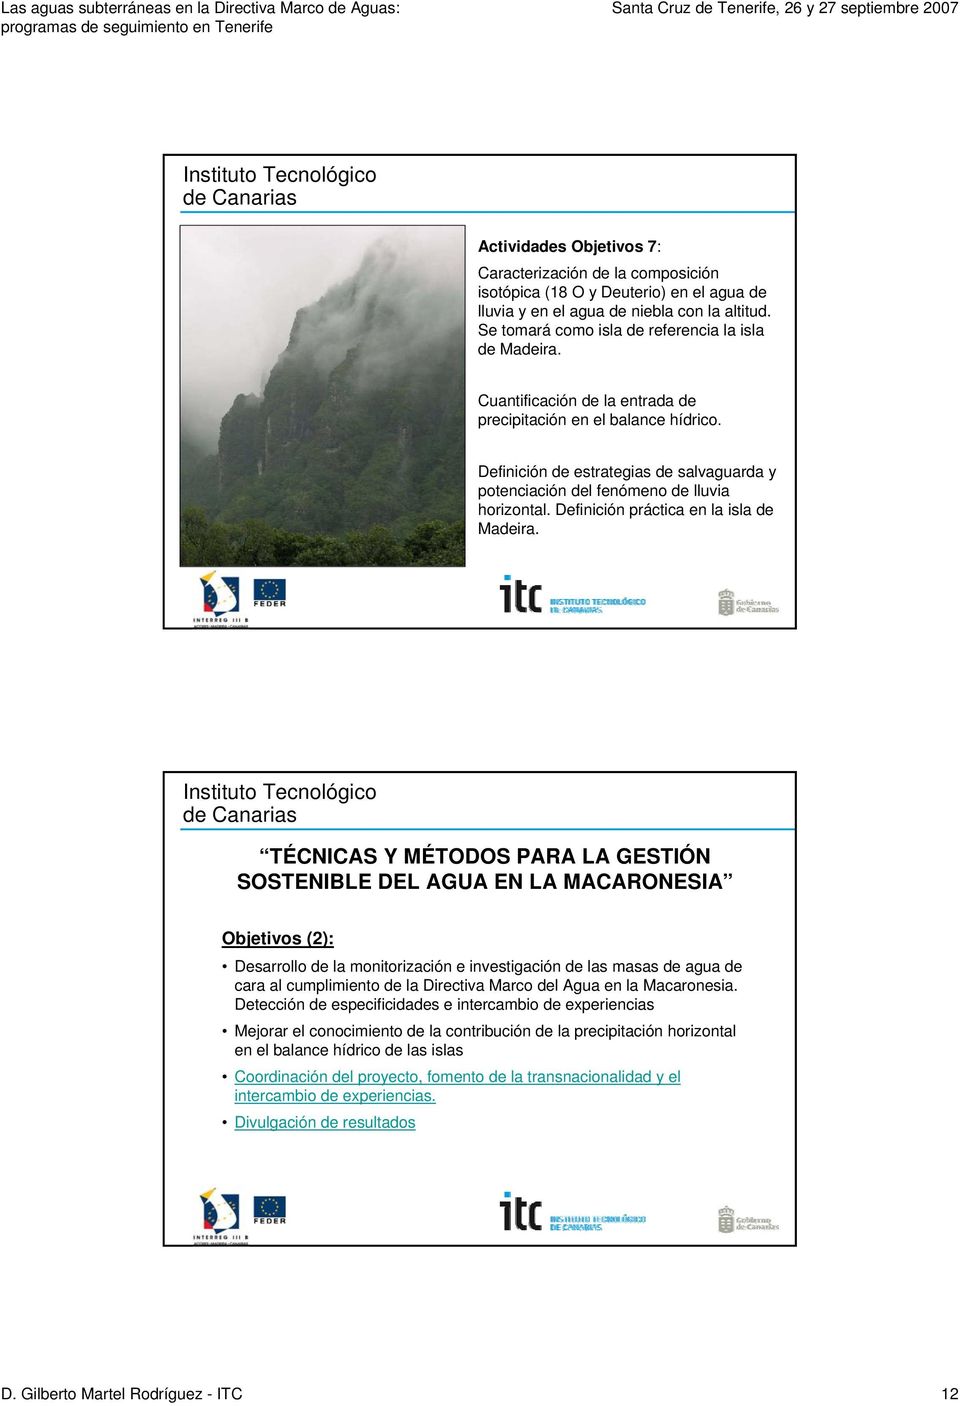 Definición práctica en la isla de Madeira. Objetivos (2): Desarrollo de la monitorización e investigación de las masas de agua de cara al cumplimiento de la Directiva Marco del Agua en la Macaronesia.